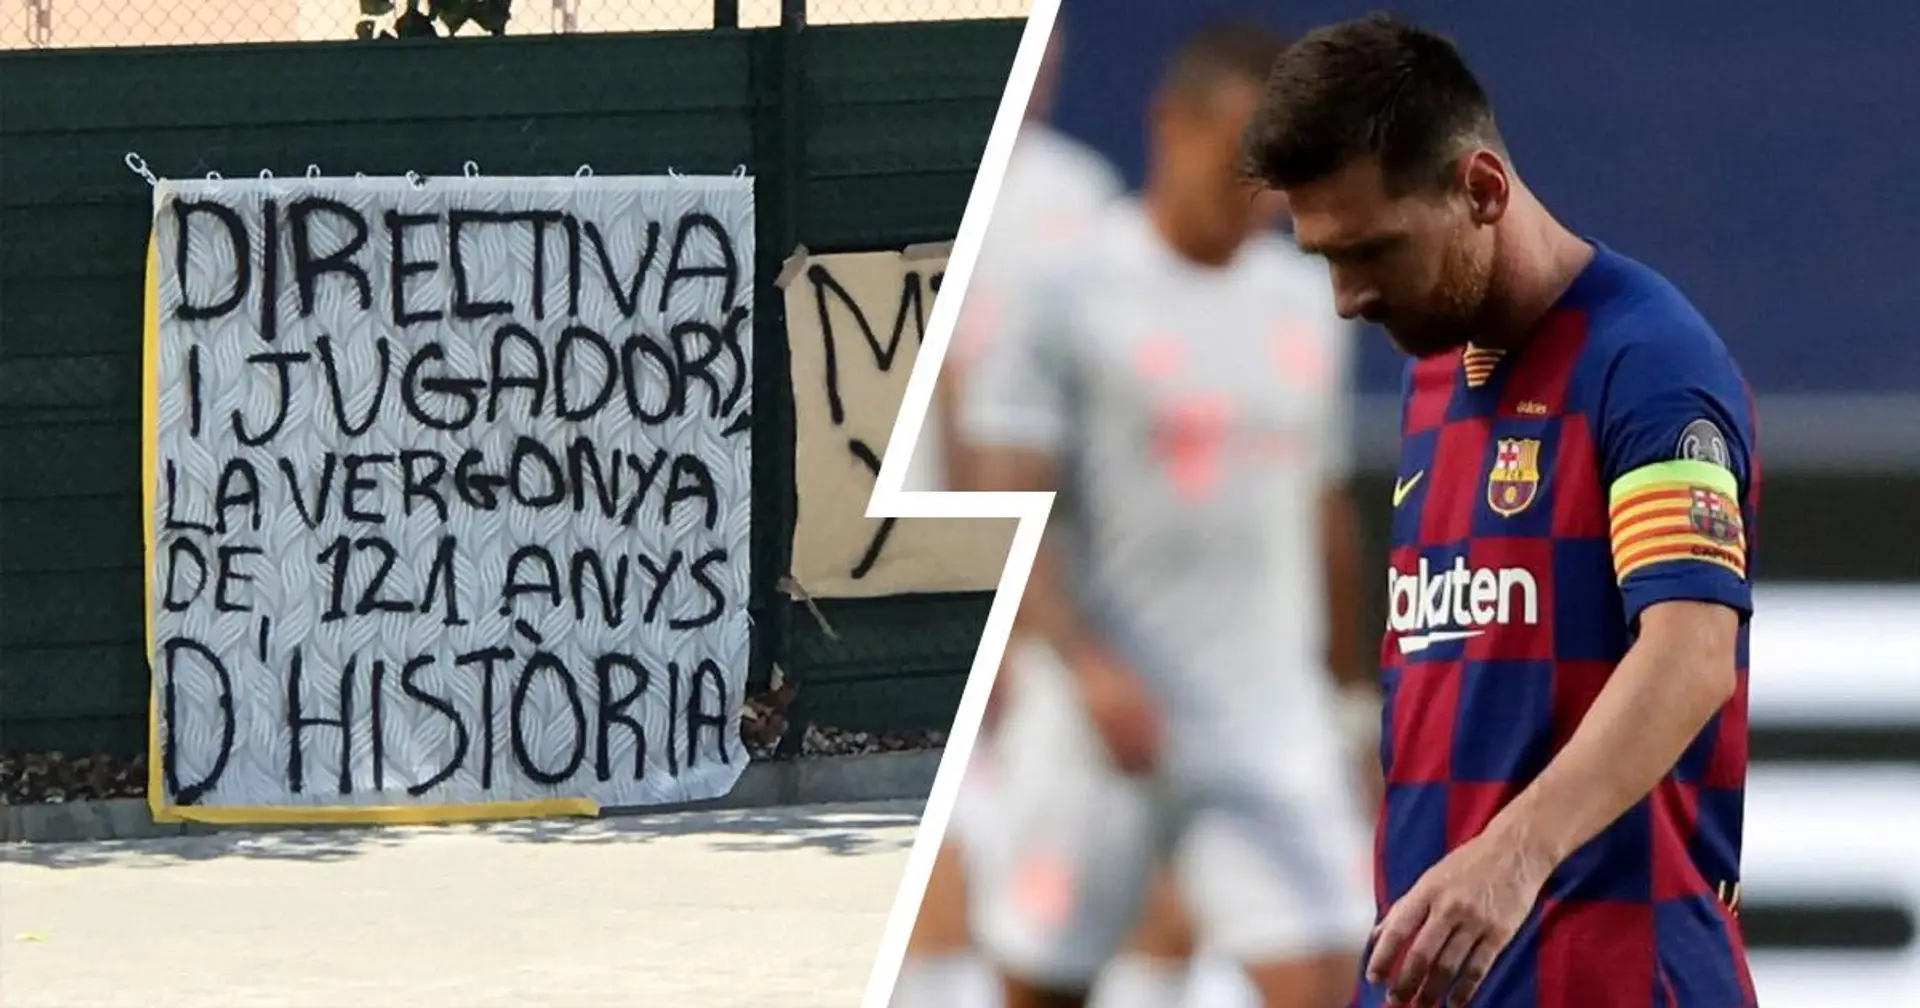 "Direction et joueurs, une honte pour les 121 ans d'histoire": Les fans accueillent de nouveau le Barça au Camp Nou avec des bannières spéciales